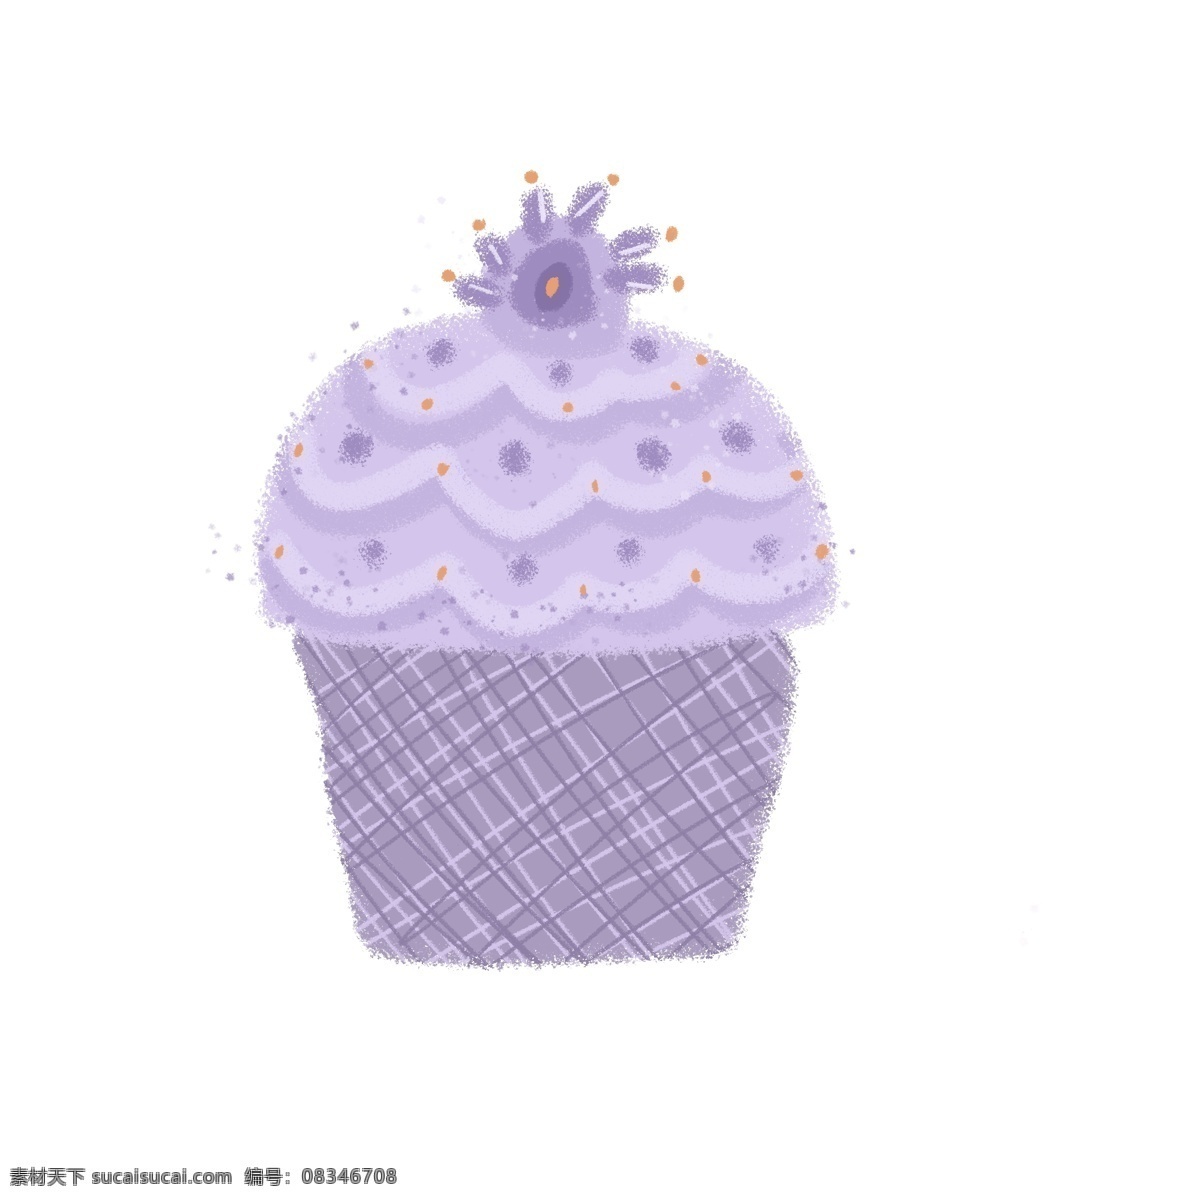 食物 甜点 杯子 蛋糕 杯子蛋糕 紫色 可爱 卡通